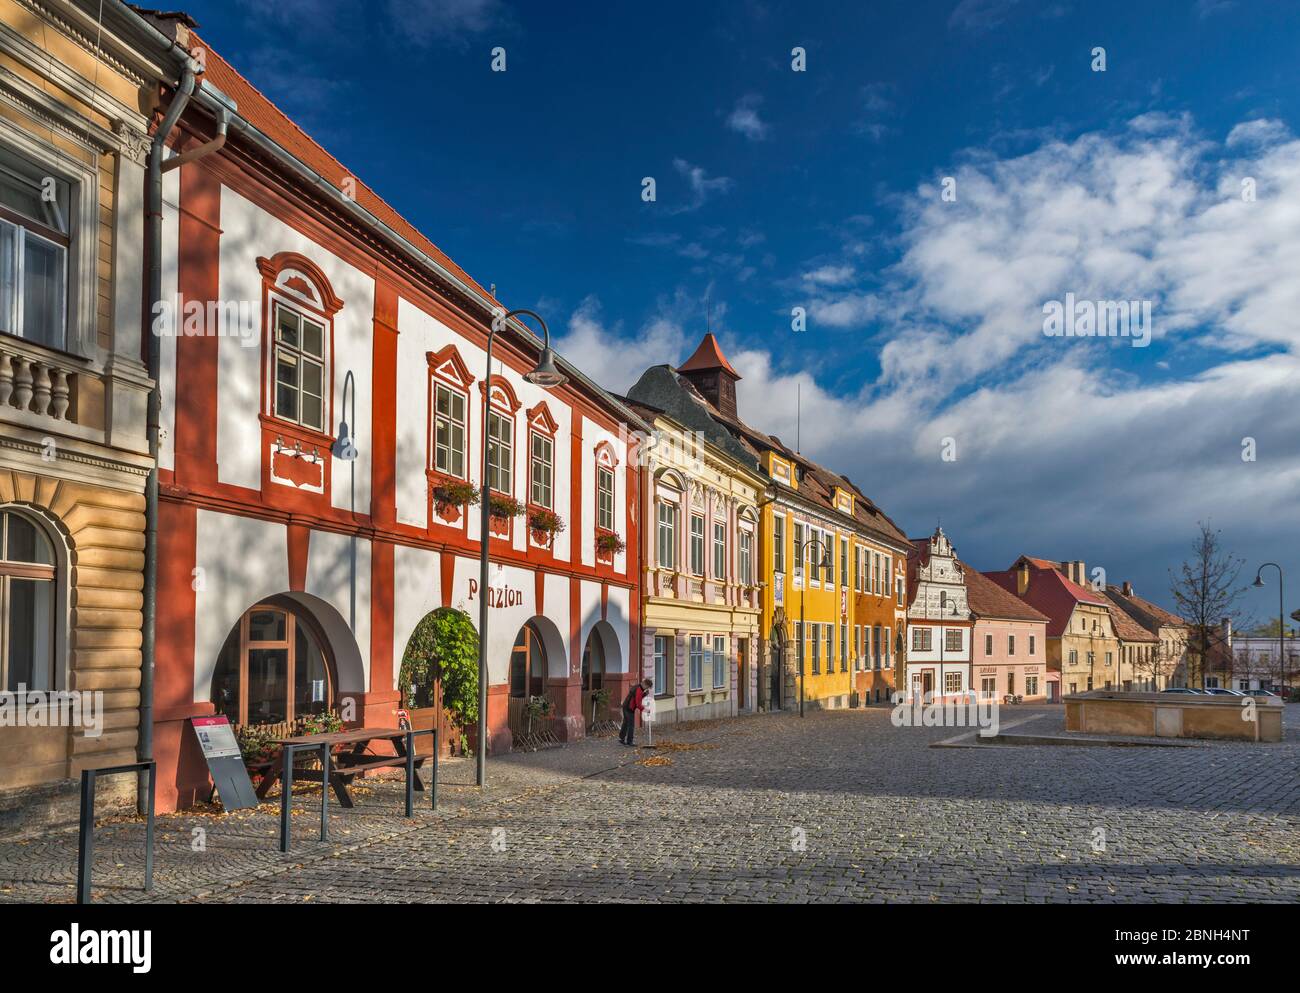 Bâtiments historiques à Trckovo namesti près du château à Opocno, Bohême, République Tchèque, Europe Centrale Banque D'Images